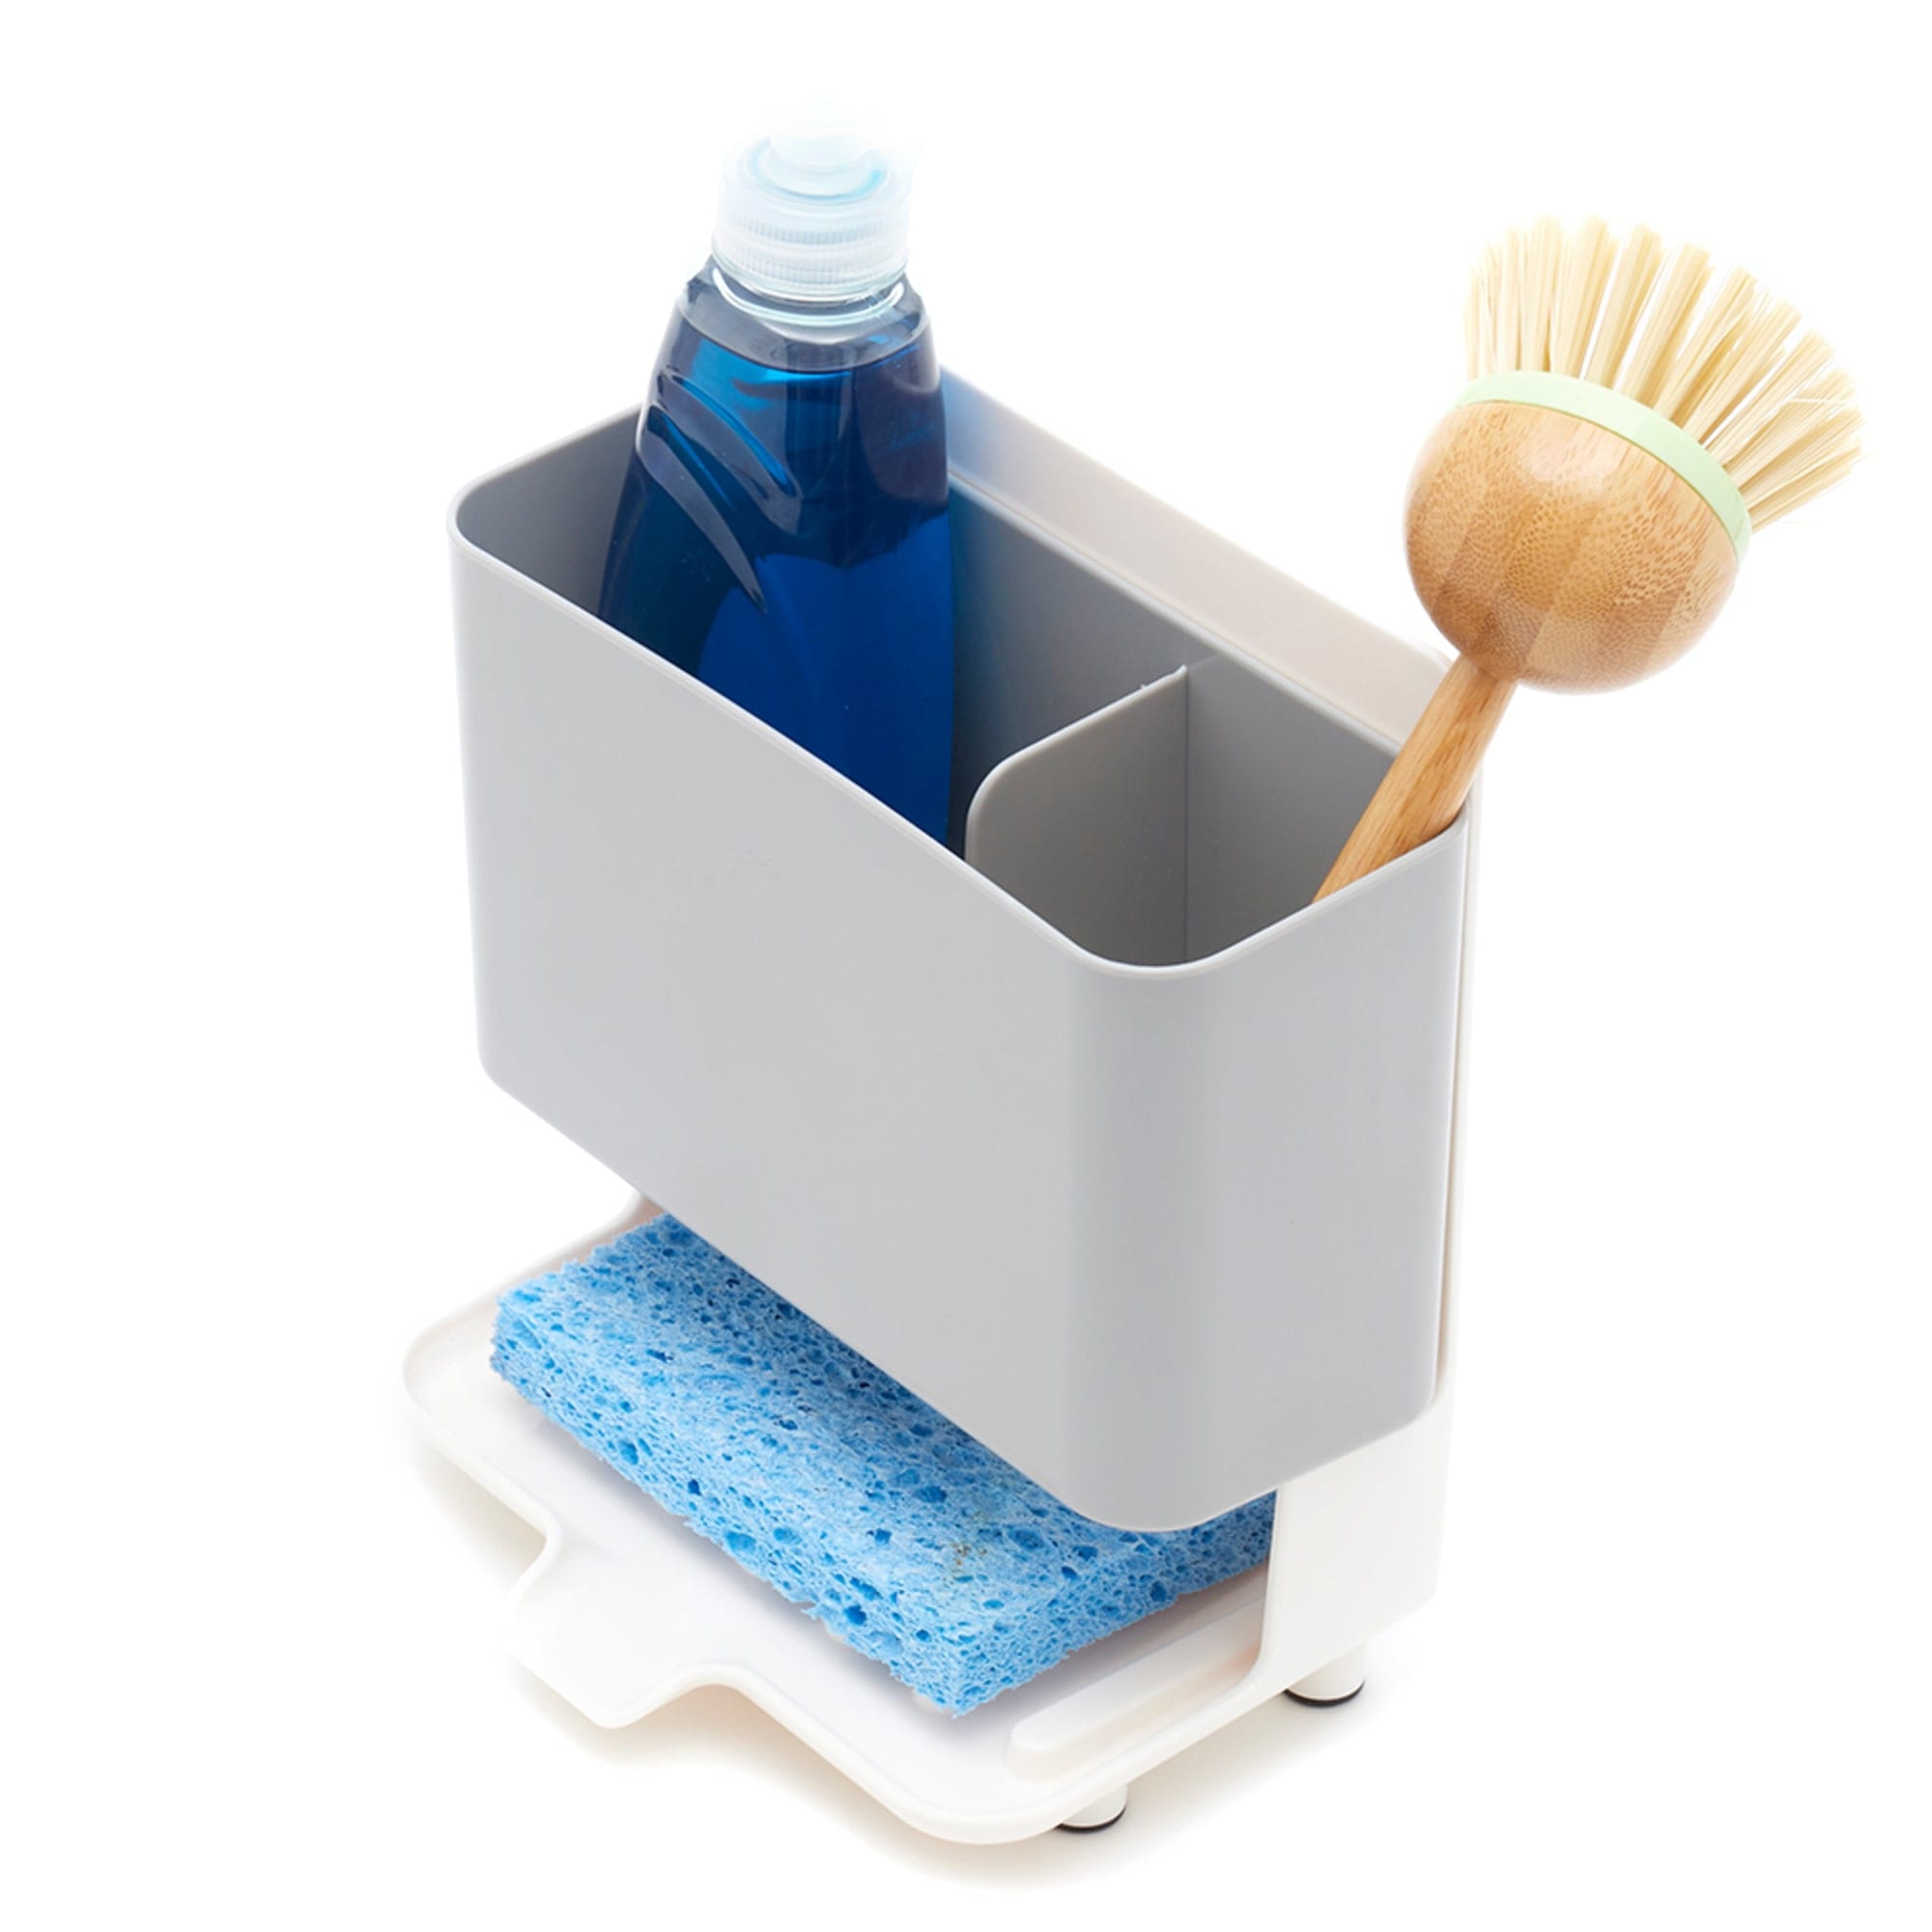 Sponge Holder for Kitchen Sink Organizer Tray New Drain Lip Sink